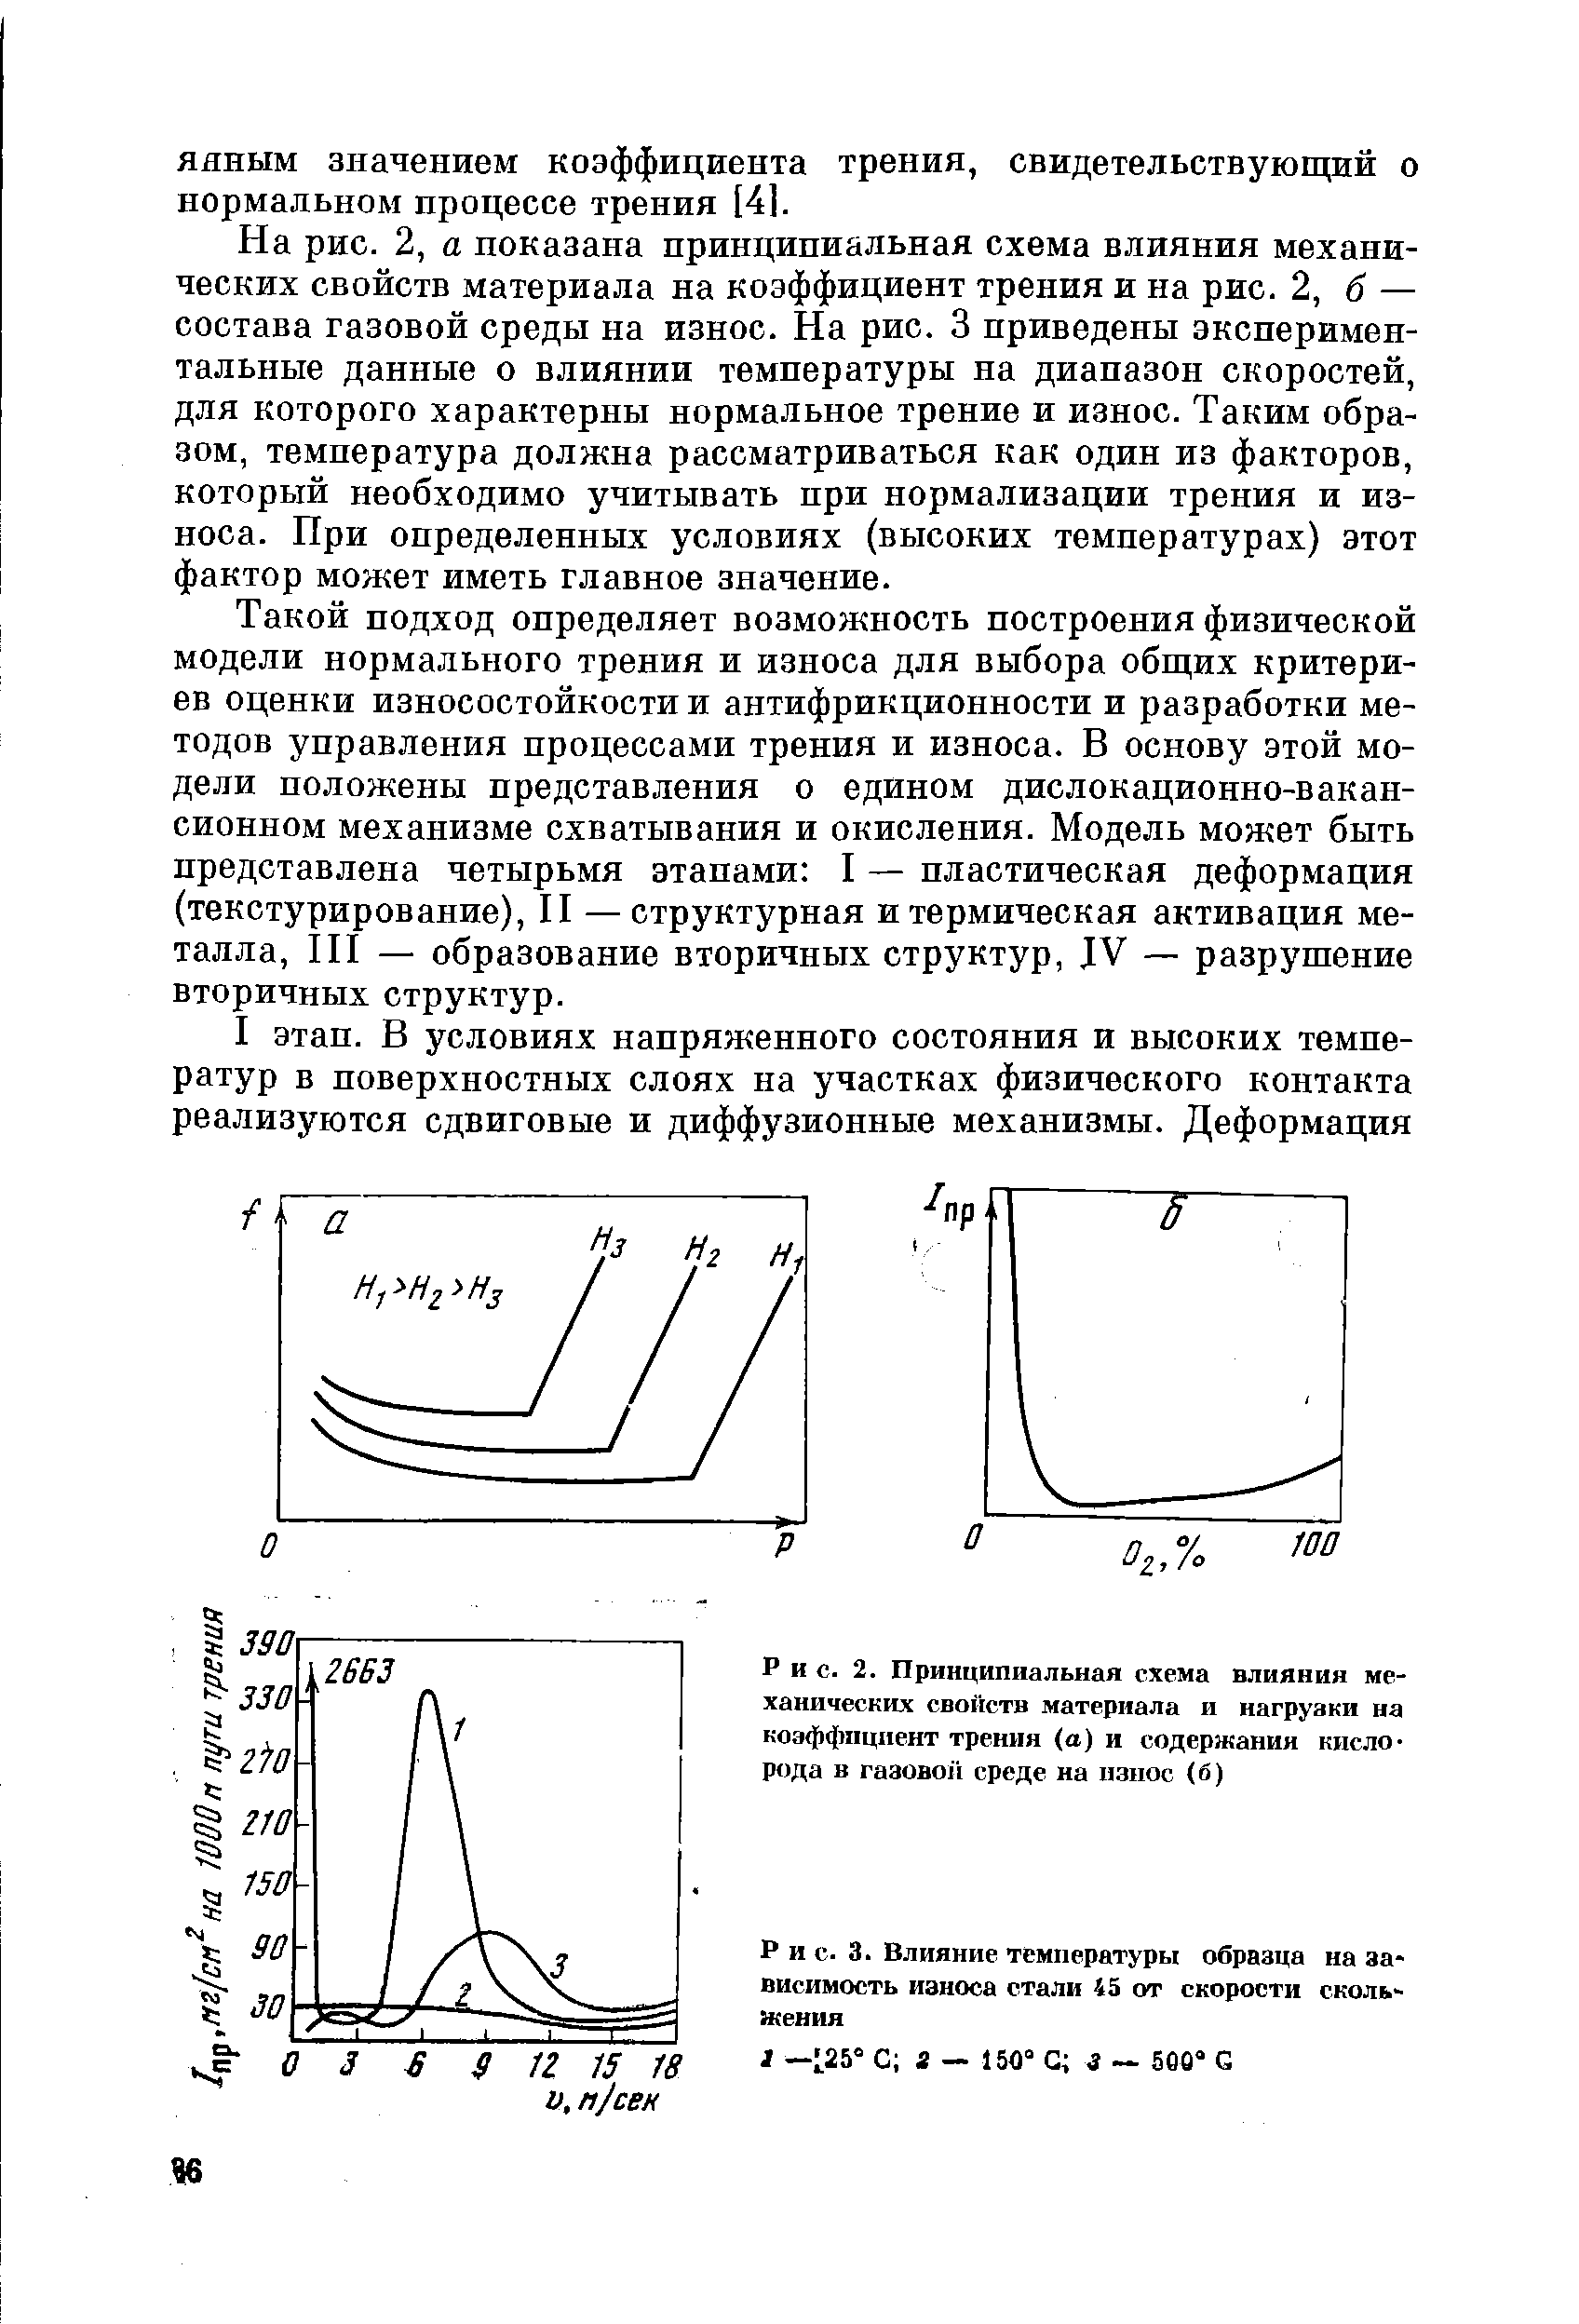 Рис. 2. Принципиальная схема влияния механических свойств материала и нагрузки на коэффициент трения (а) и содержании кислорода в raaoBoii среде на износ (б)
